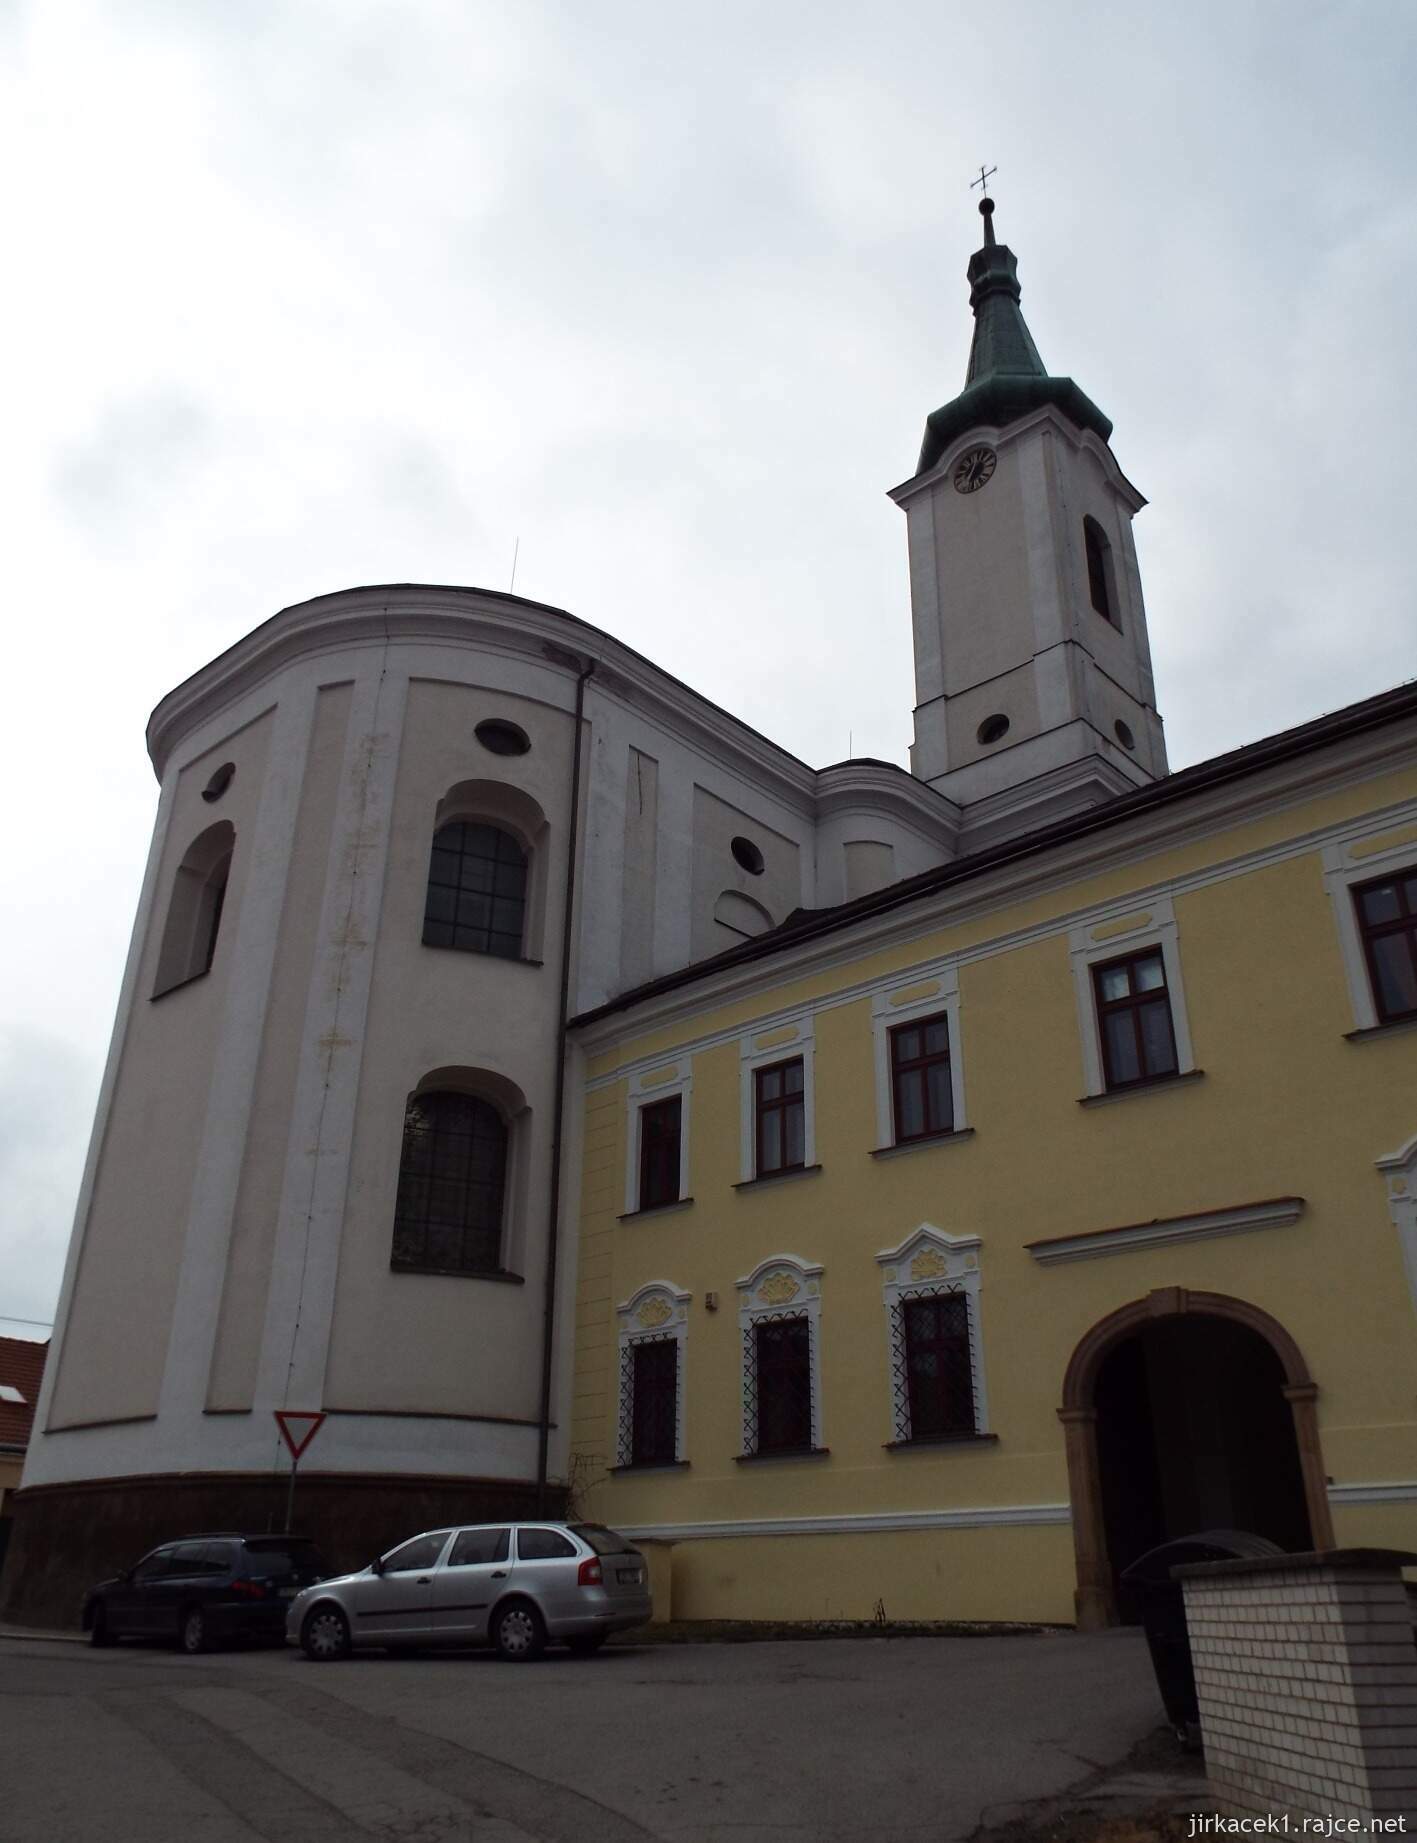 06 - Jevíčko - Kostel Nanebevzetí Panny Marie s klášterem Augustiánů 04